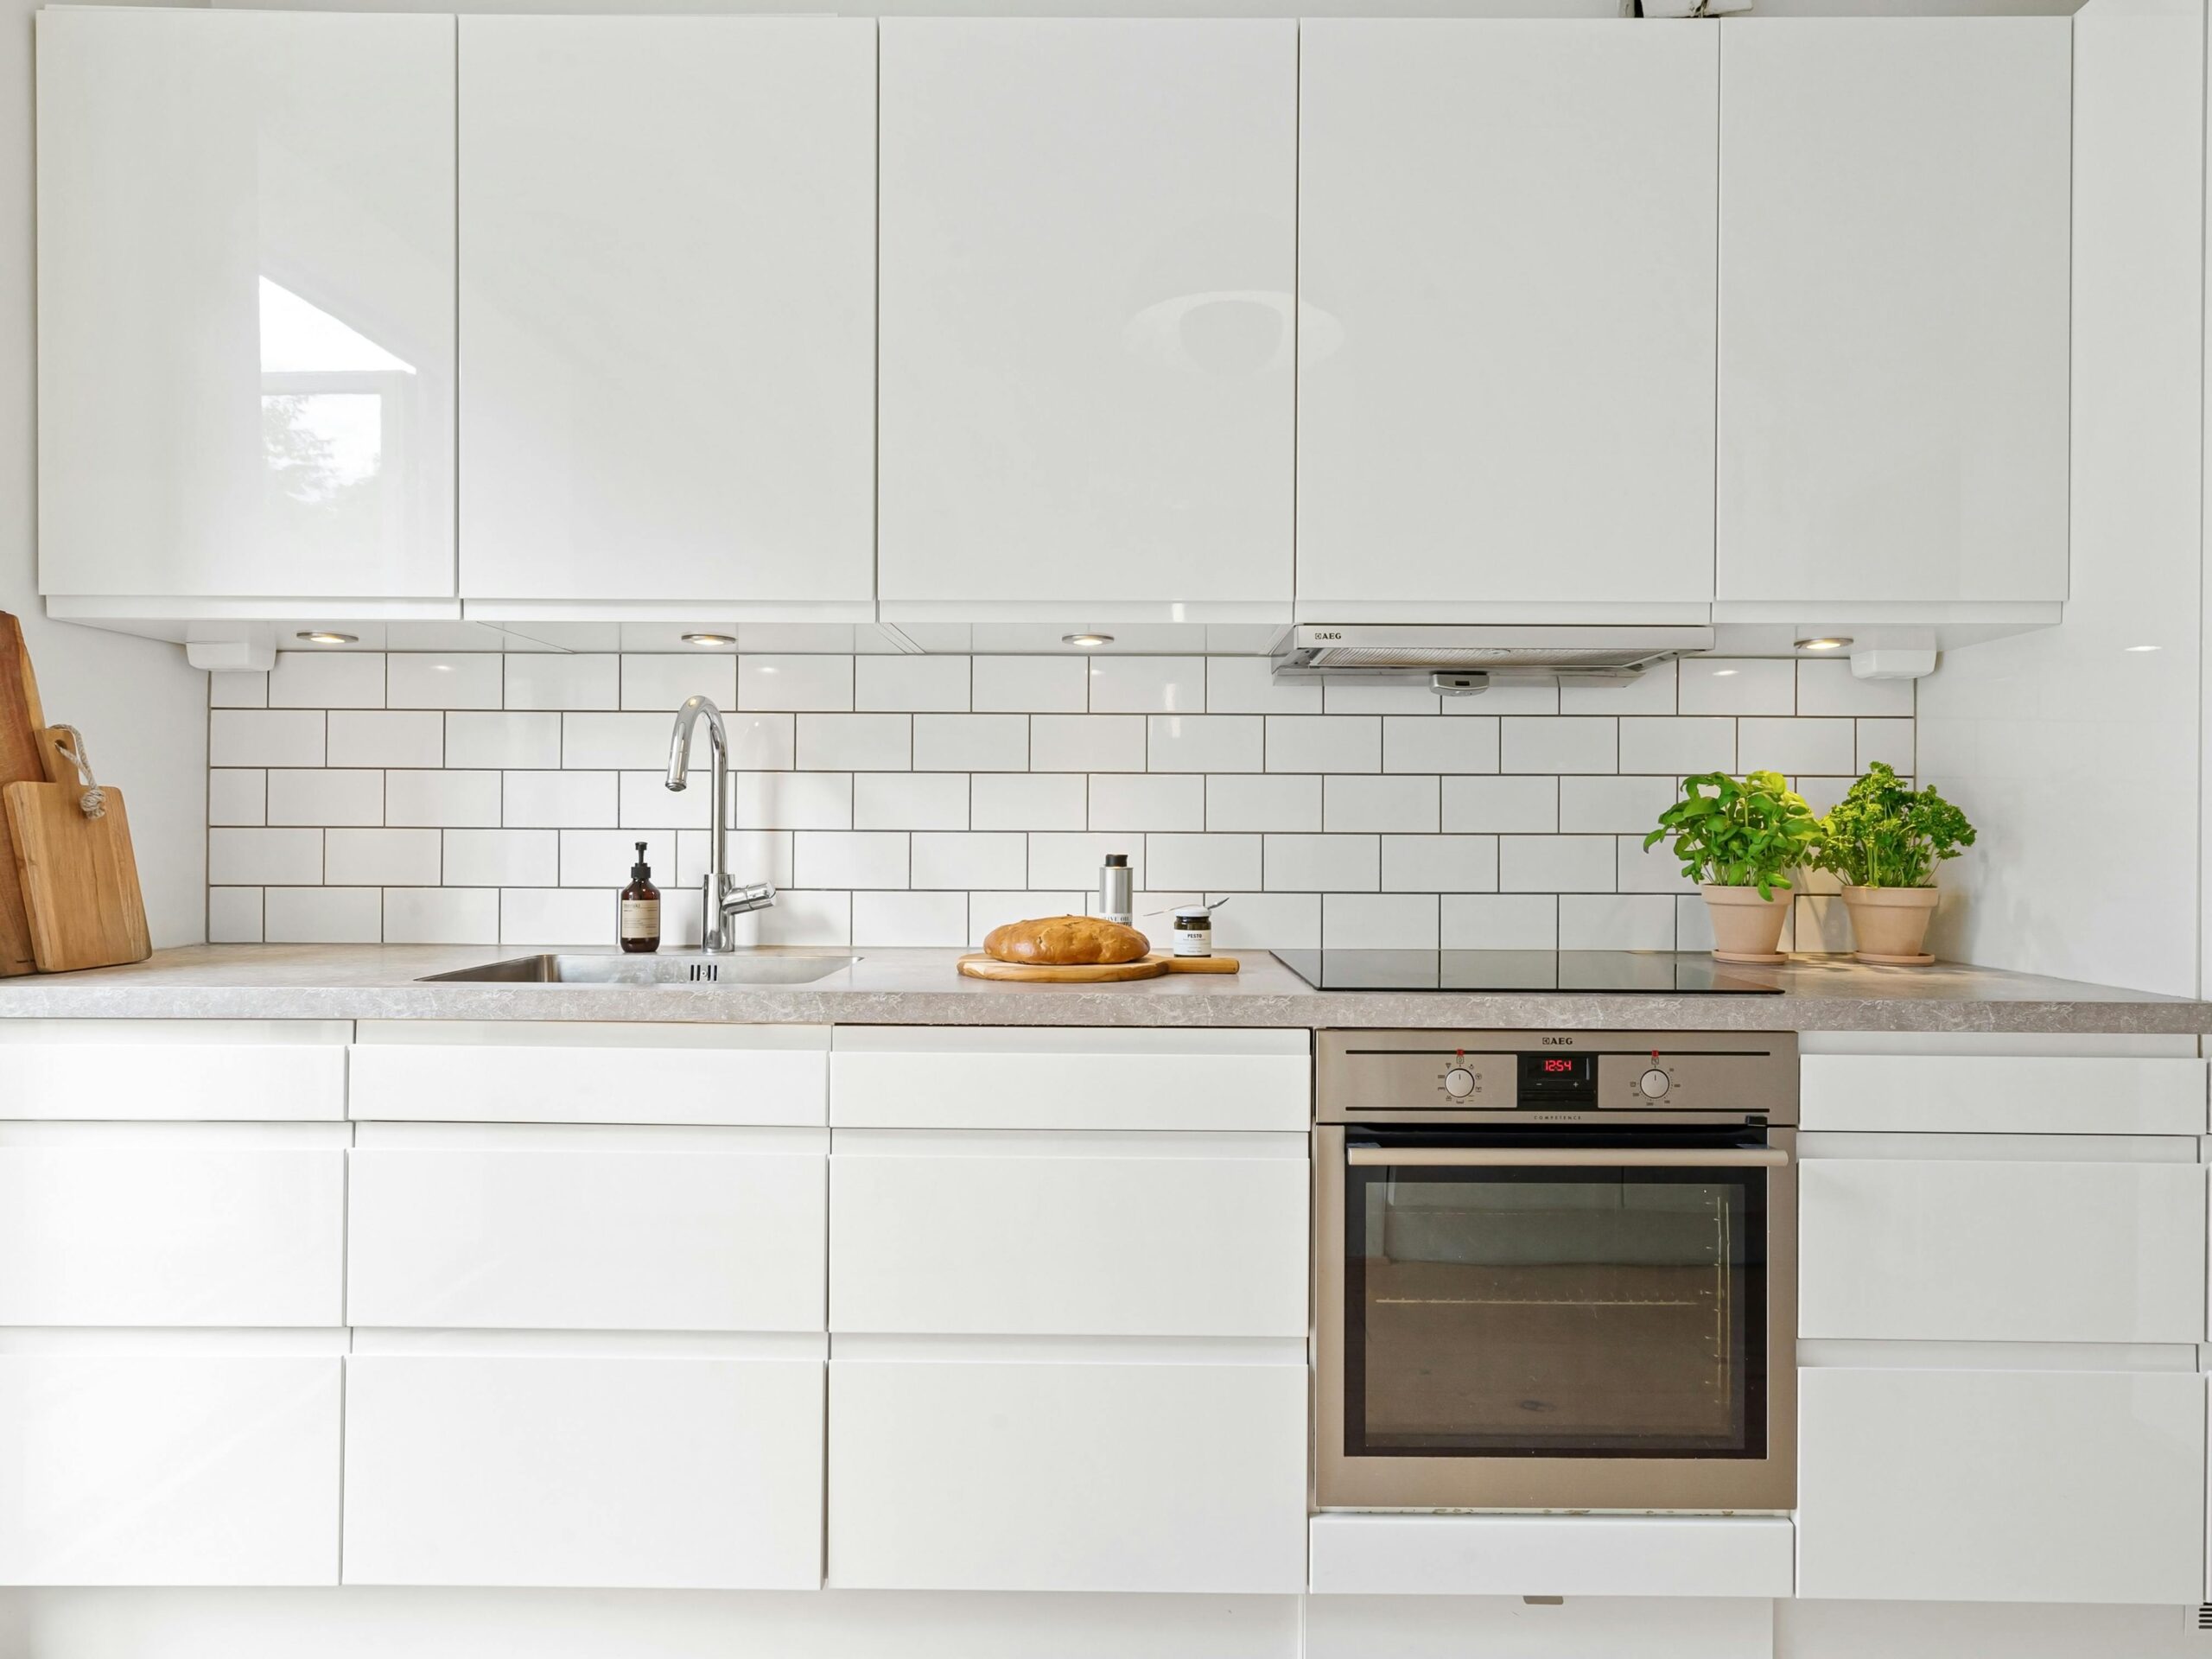 10 Best Small Kitchen Interior Design Ideas To Consider